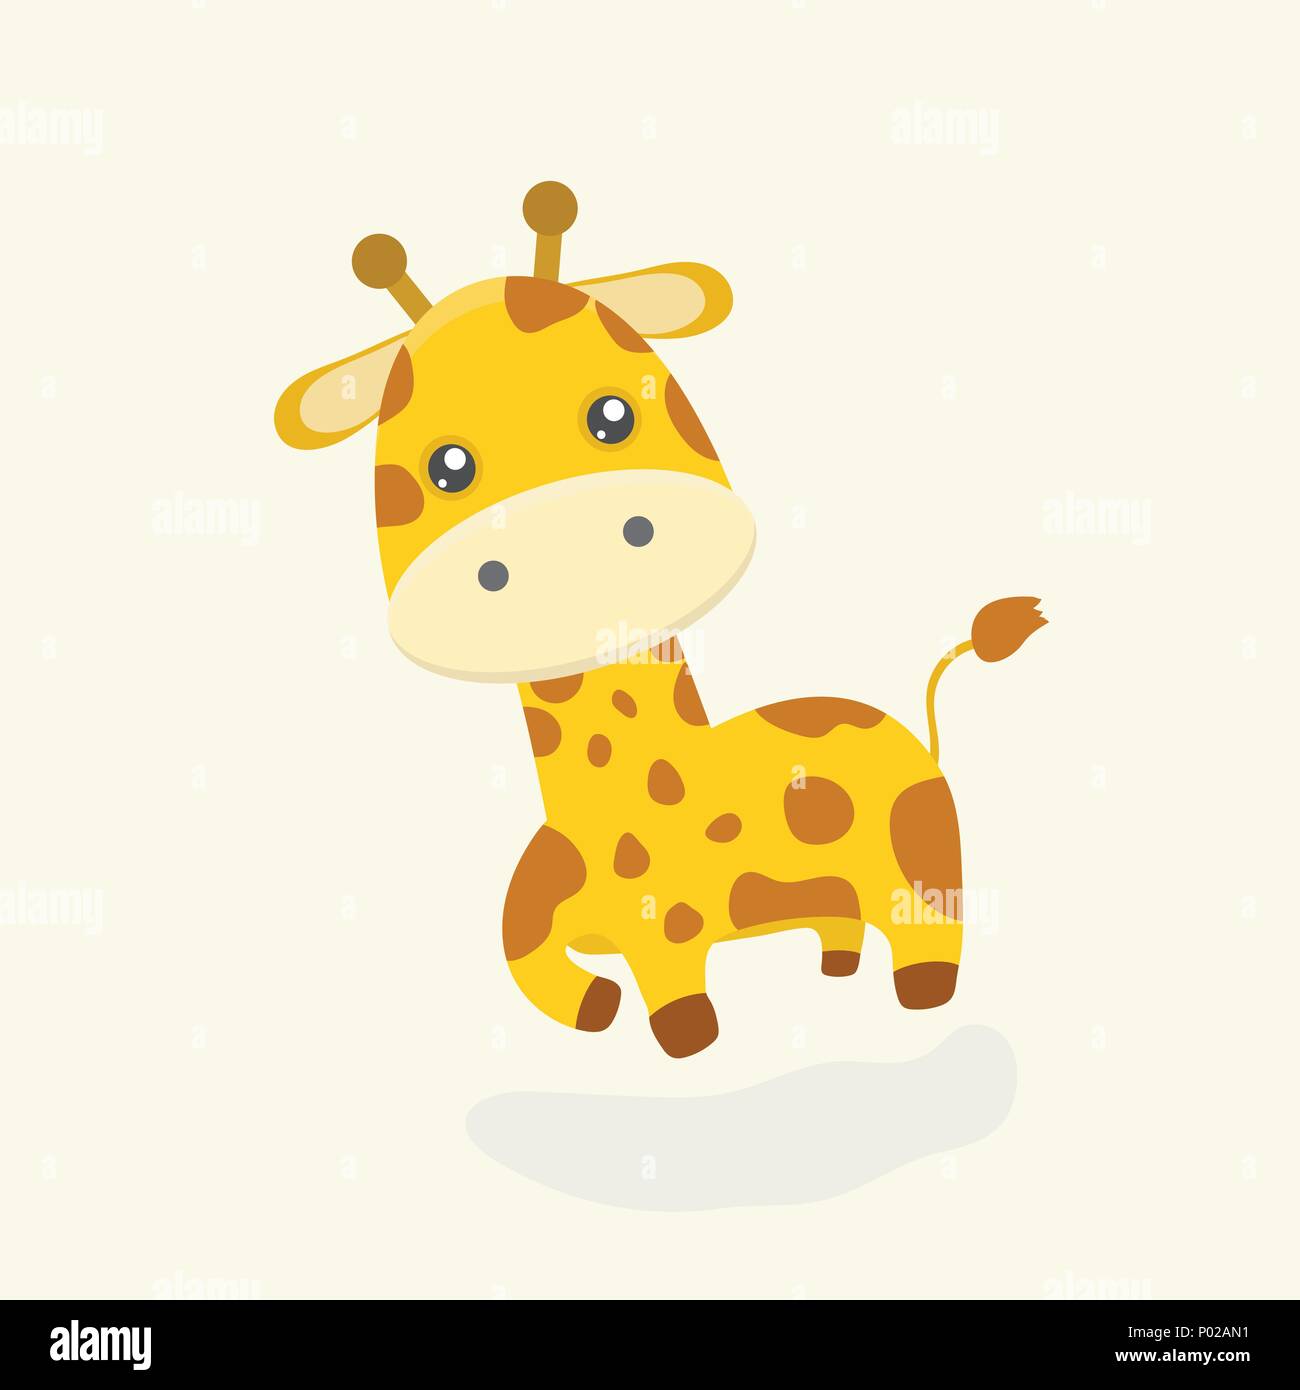 Cute giraffe cartoon Stock Vector Image & Art - Alamy